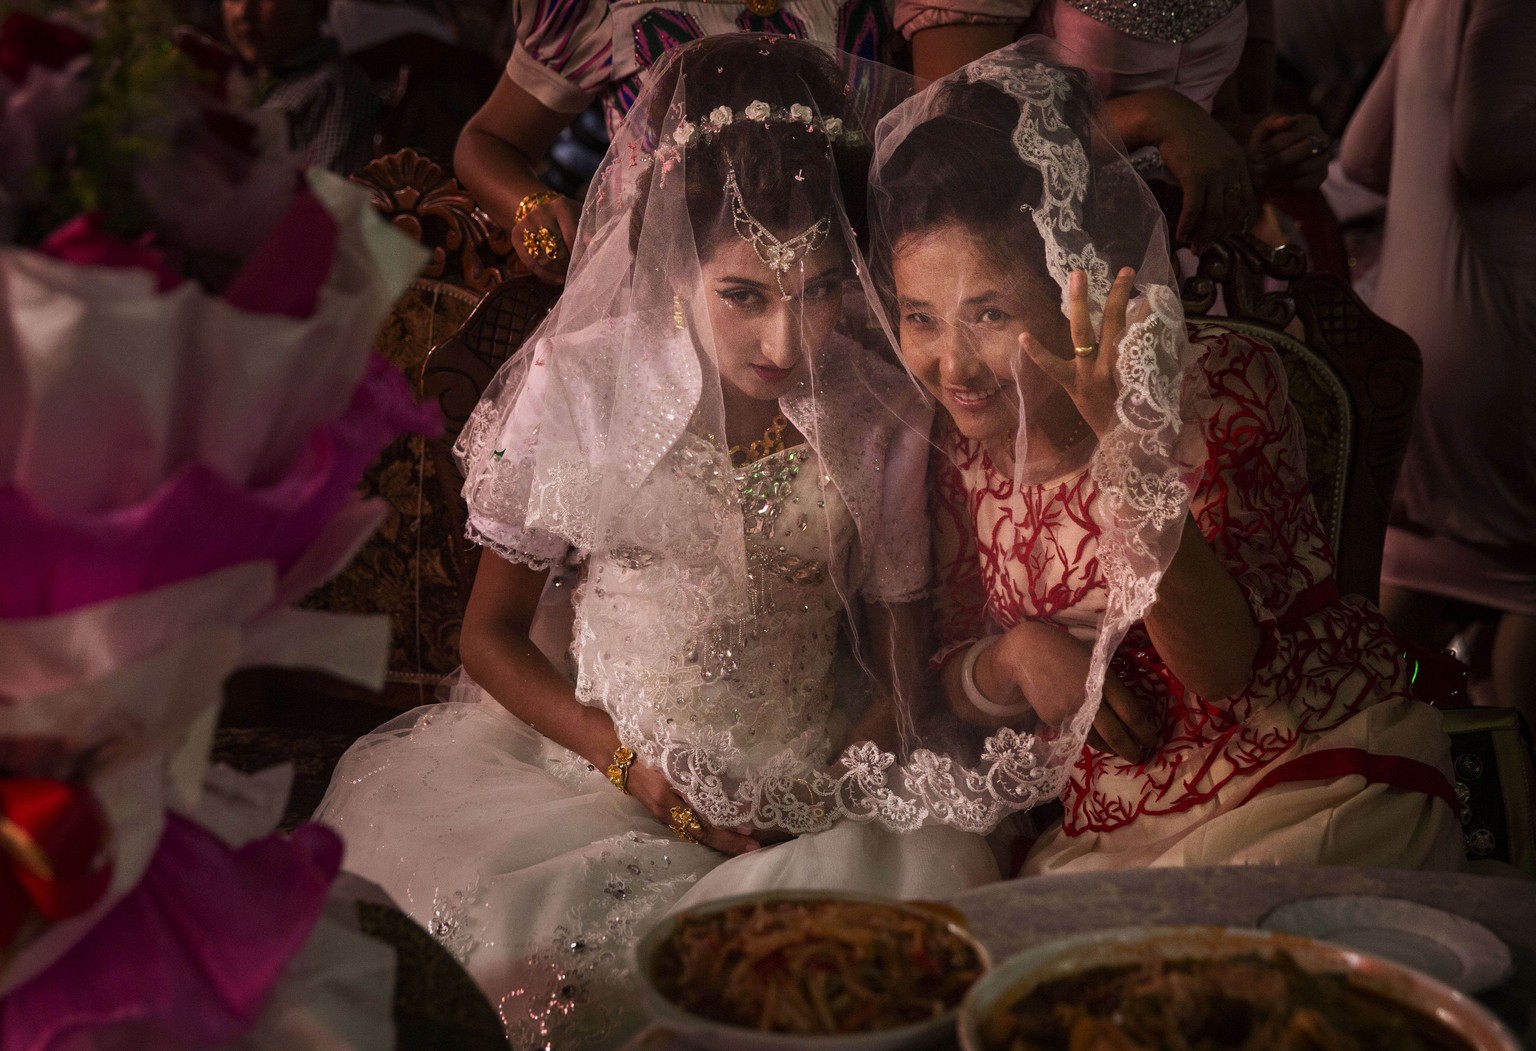 Hochzeitsfeier: Eine uigurische Braut mit einer Freundin.&nbsp;